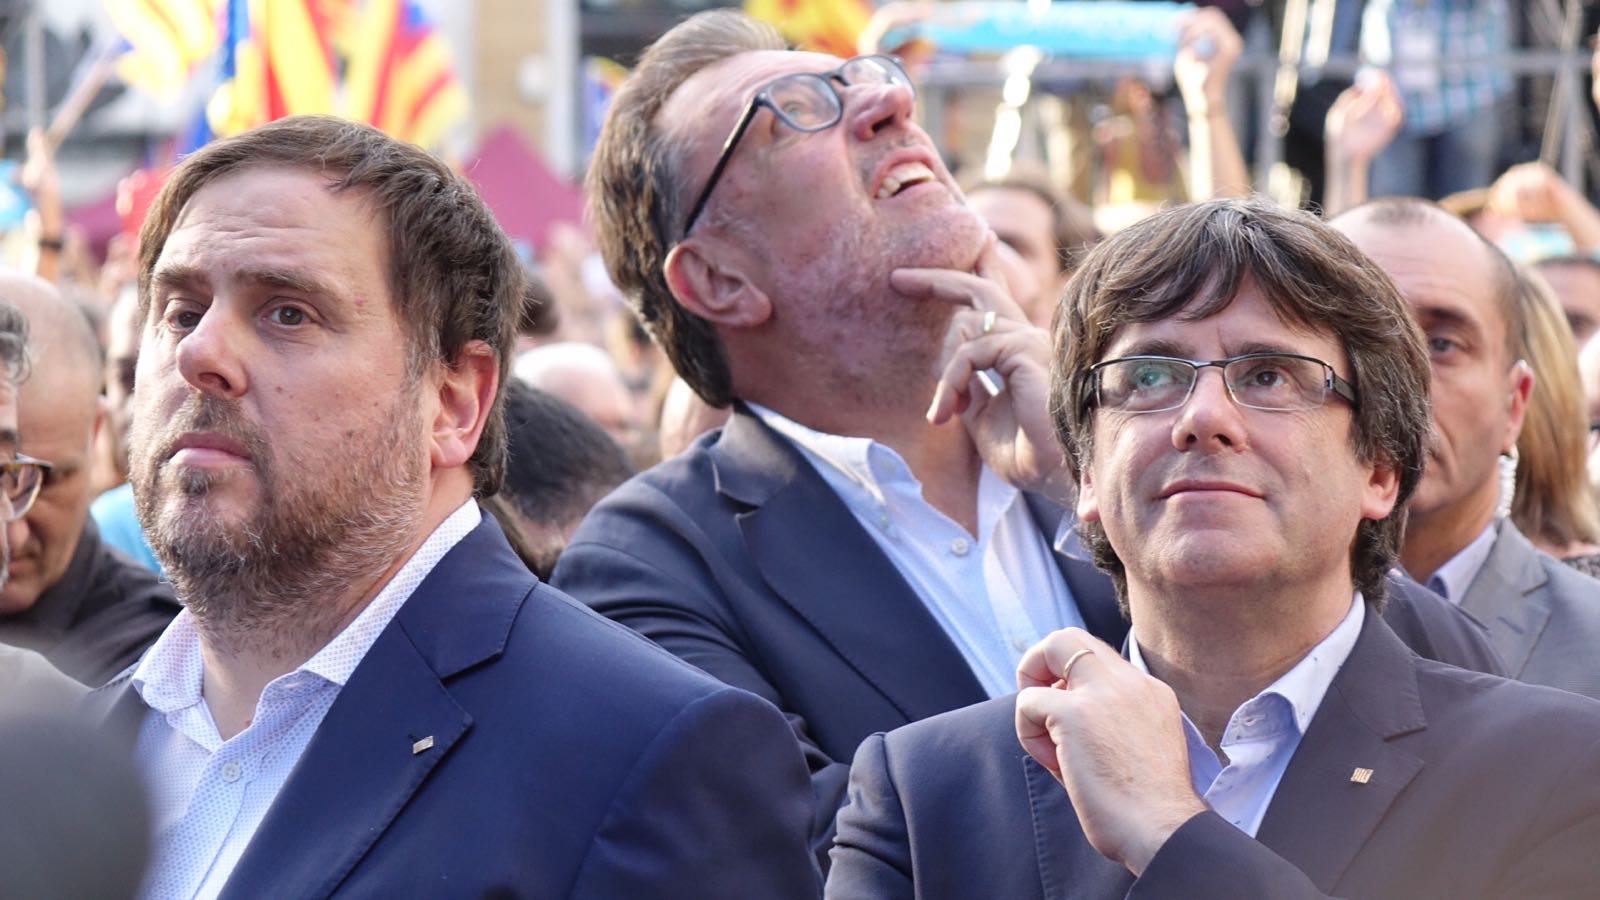 El conflicte català pot iniciar la renovació d'Europa, segons 'The Guardian'